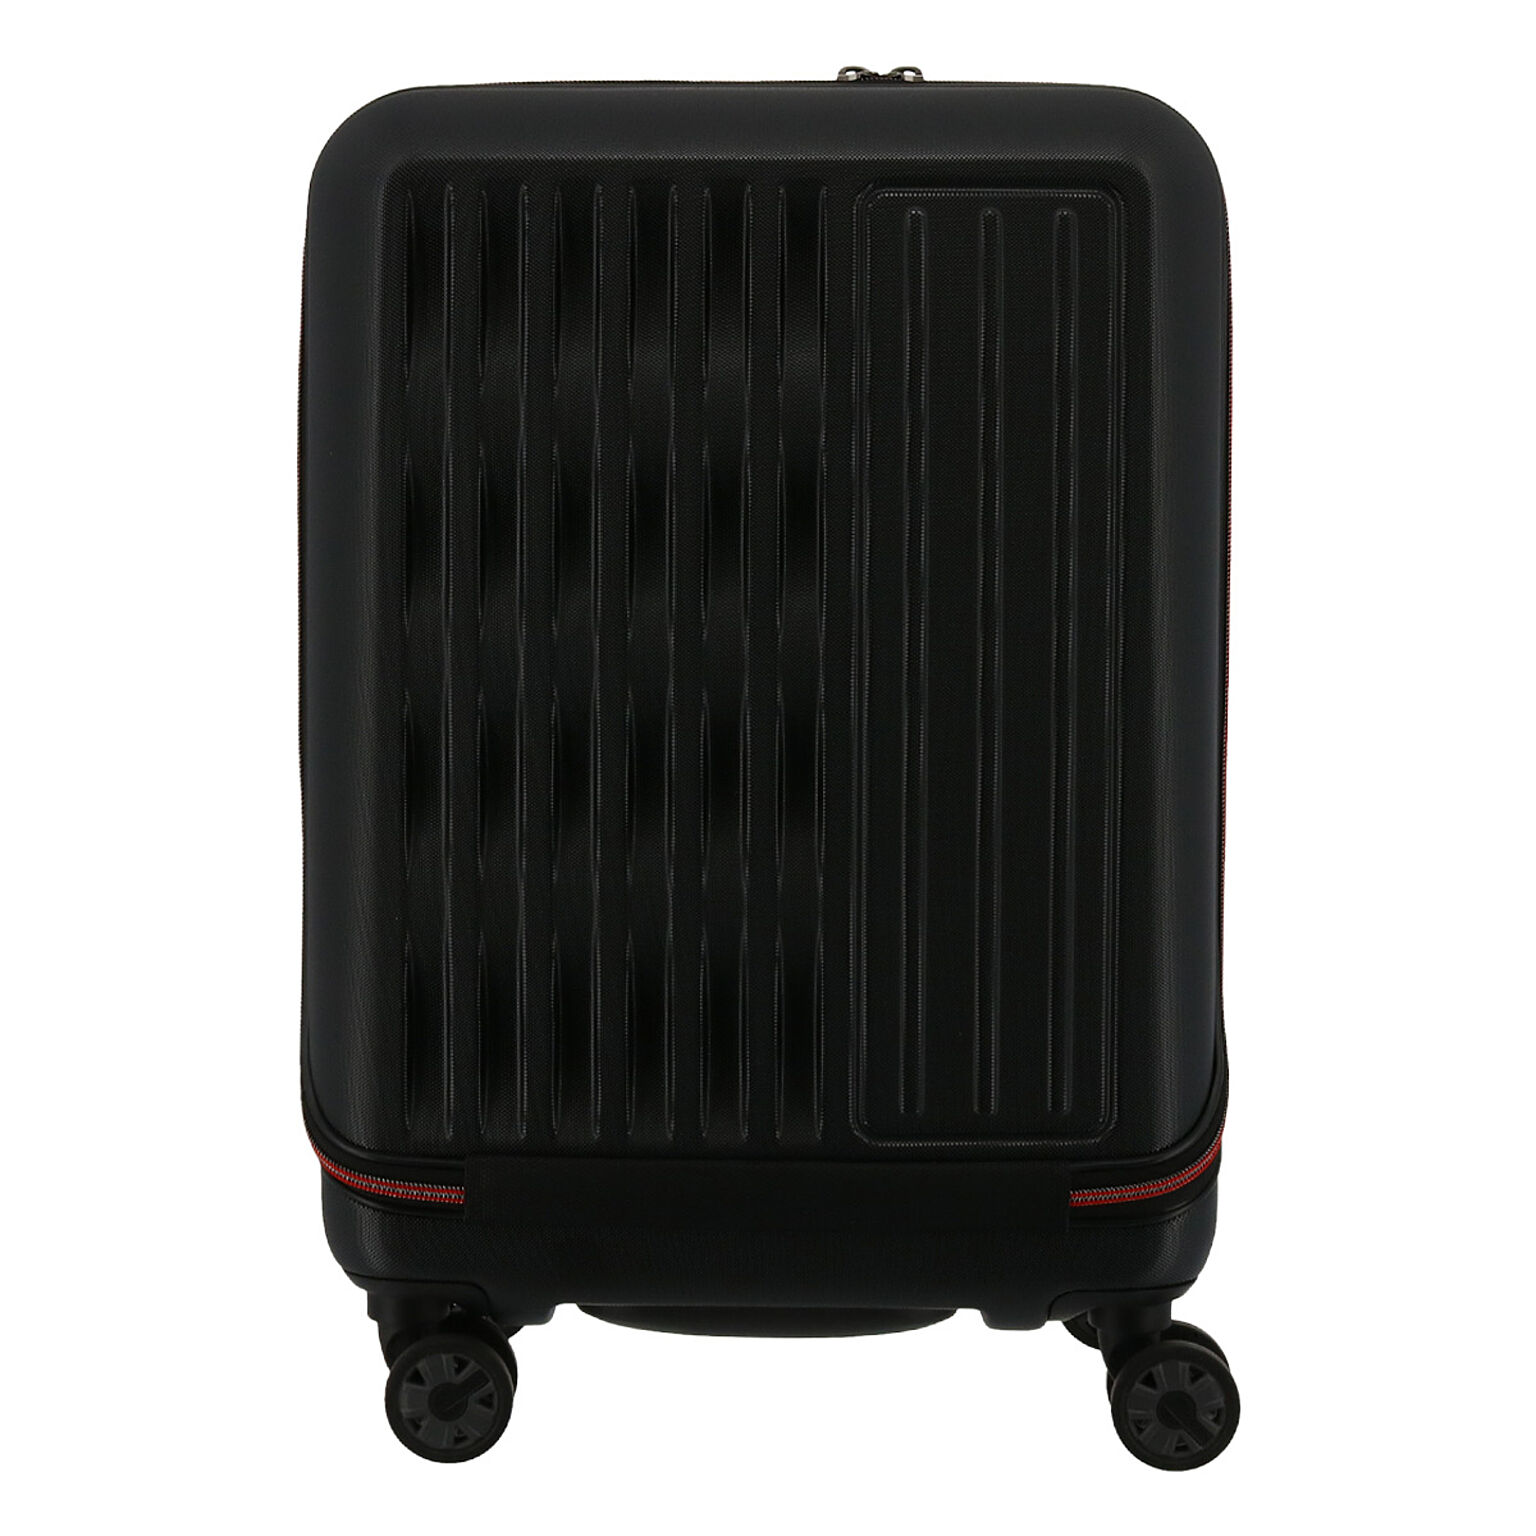 ウェーブ スーツケース 38L 48cm 3.1kg W8118FP WAVE ハード フレーム キャリーバッグ キャリーケース ビジネスキャリー